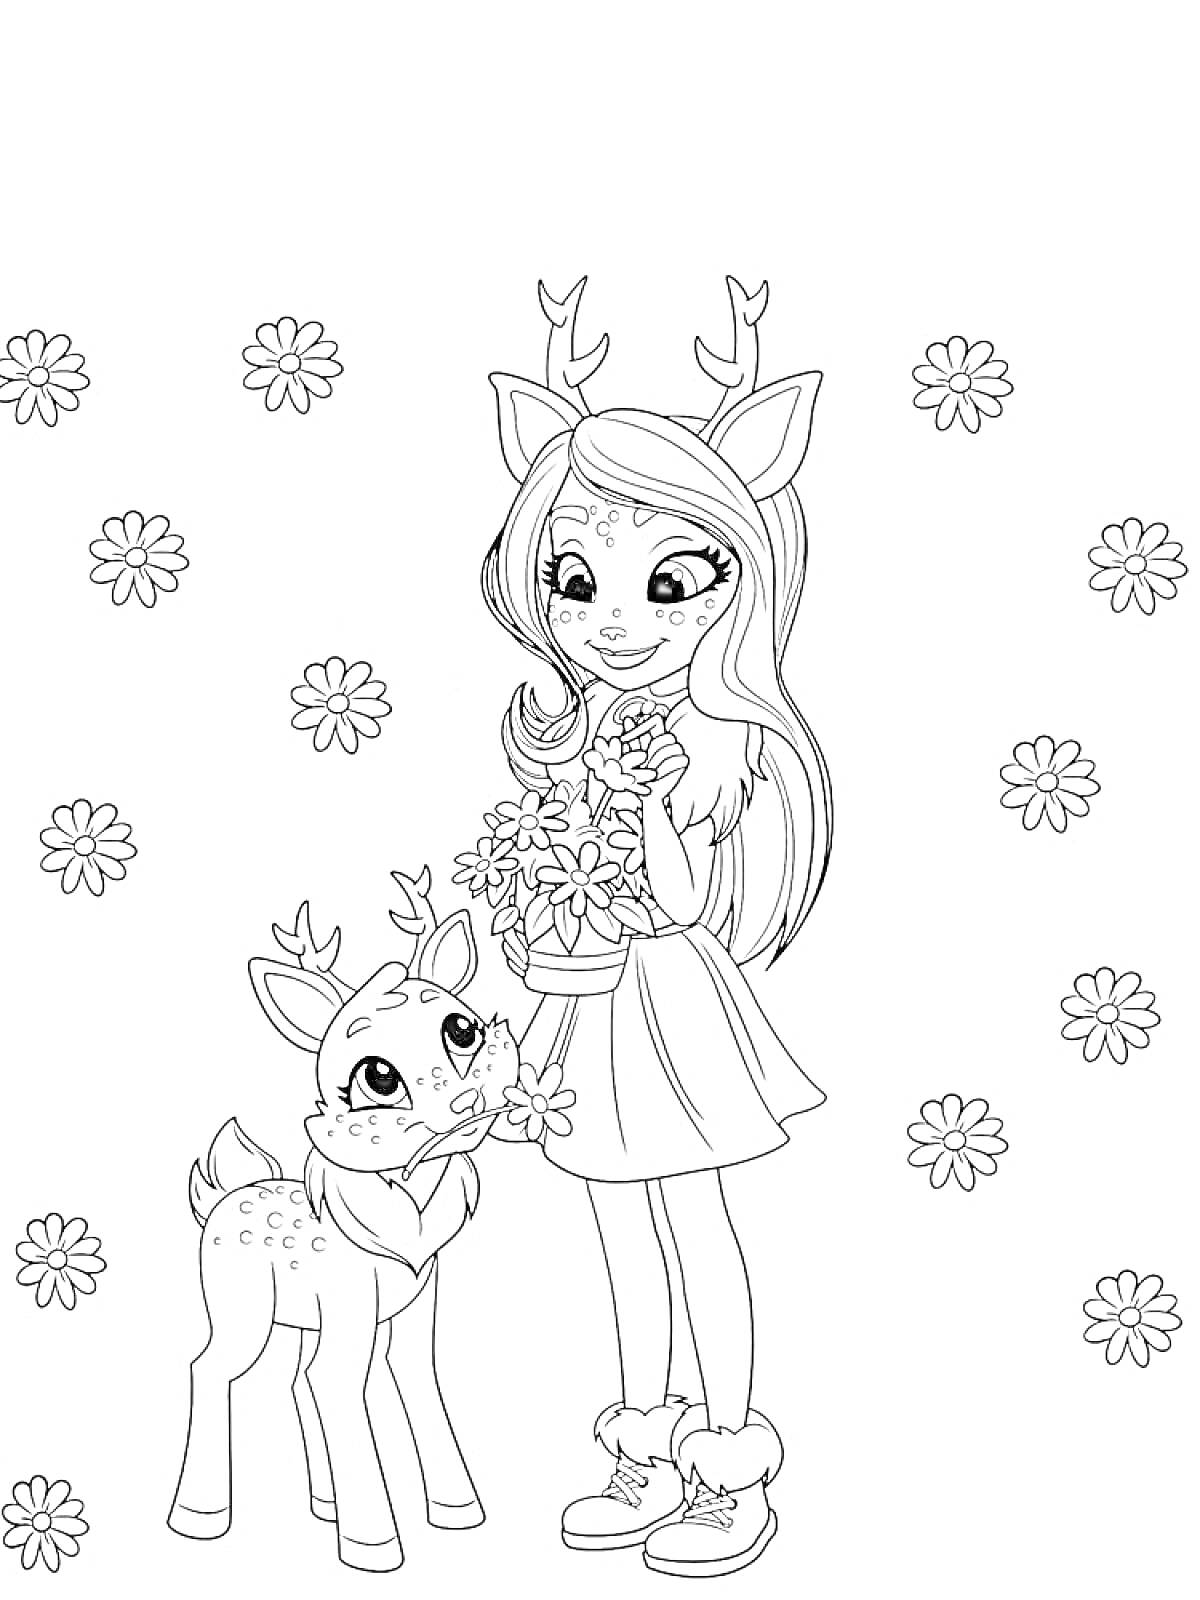 Раскраска Девочка-олень с букетом цветов и олененок на фоне цветов.